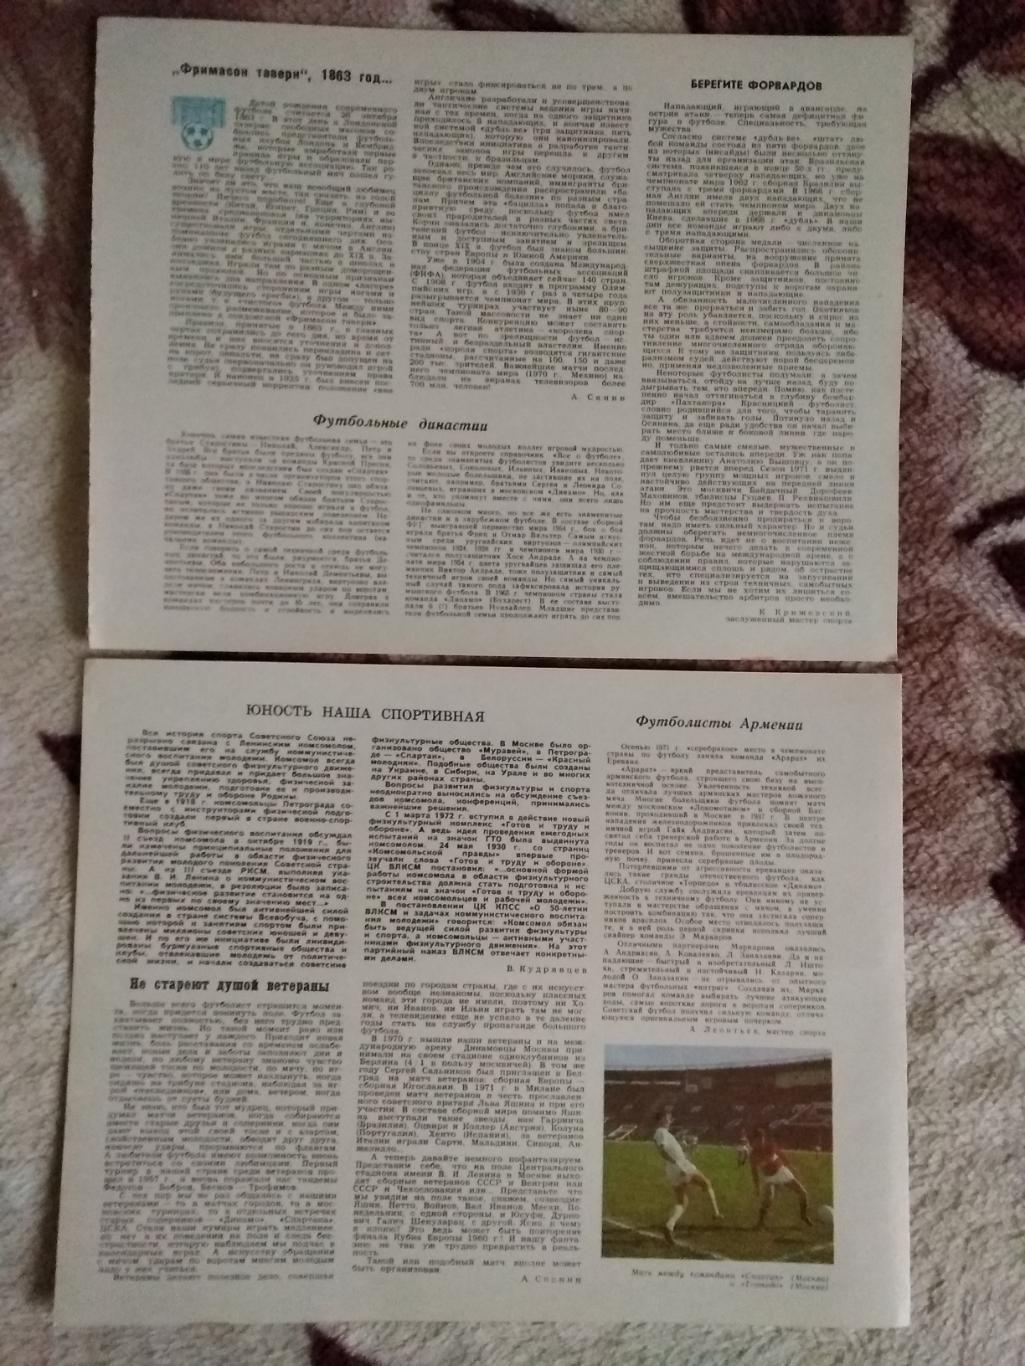 Статья.Футбол.Календарь Спорт 1973 г. (2).